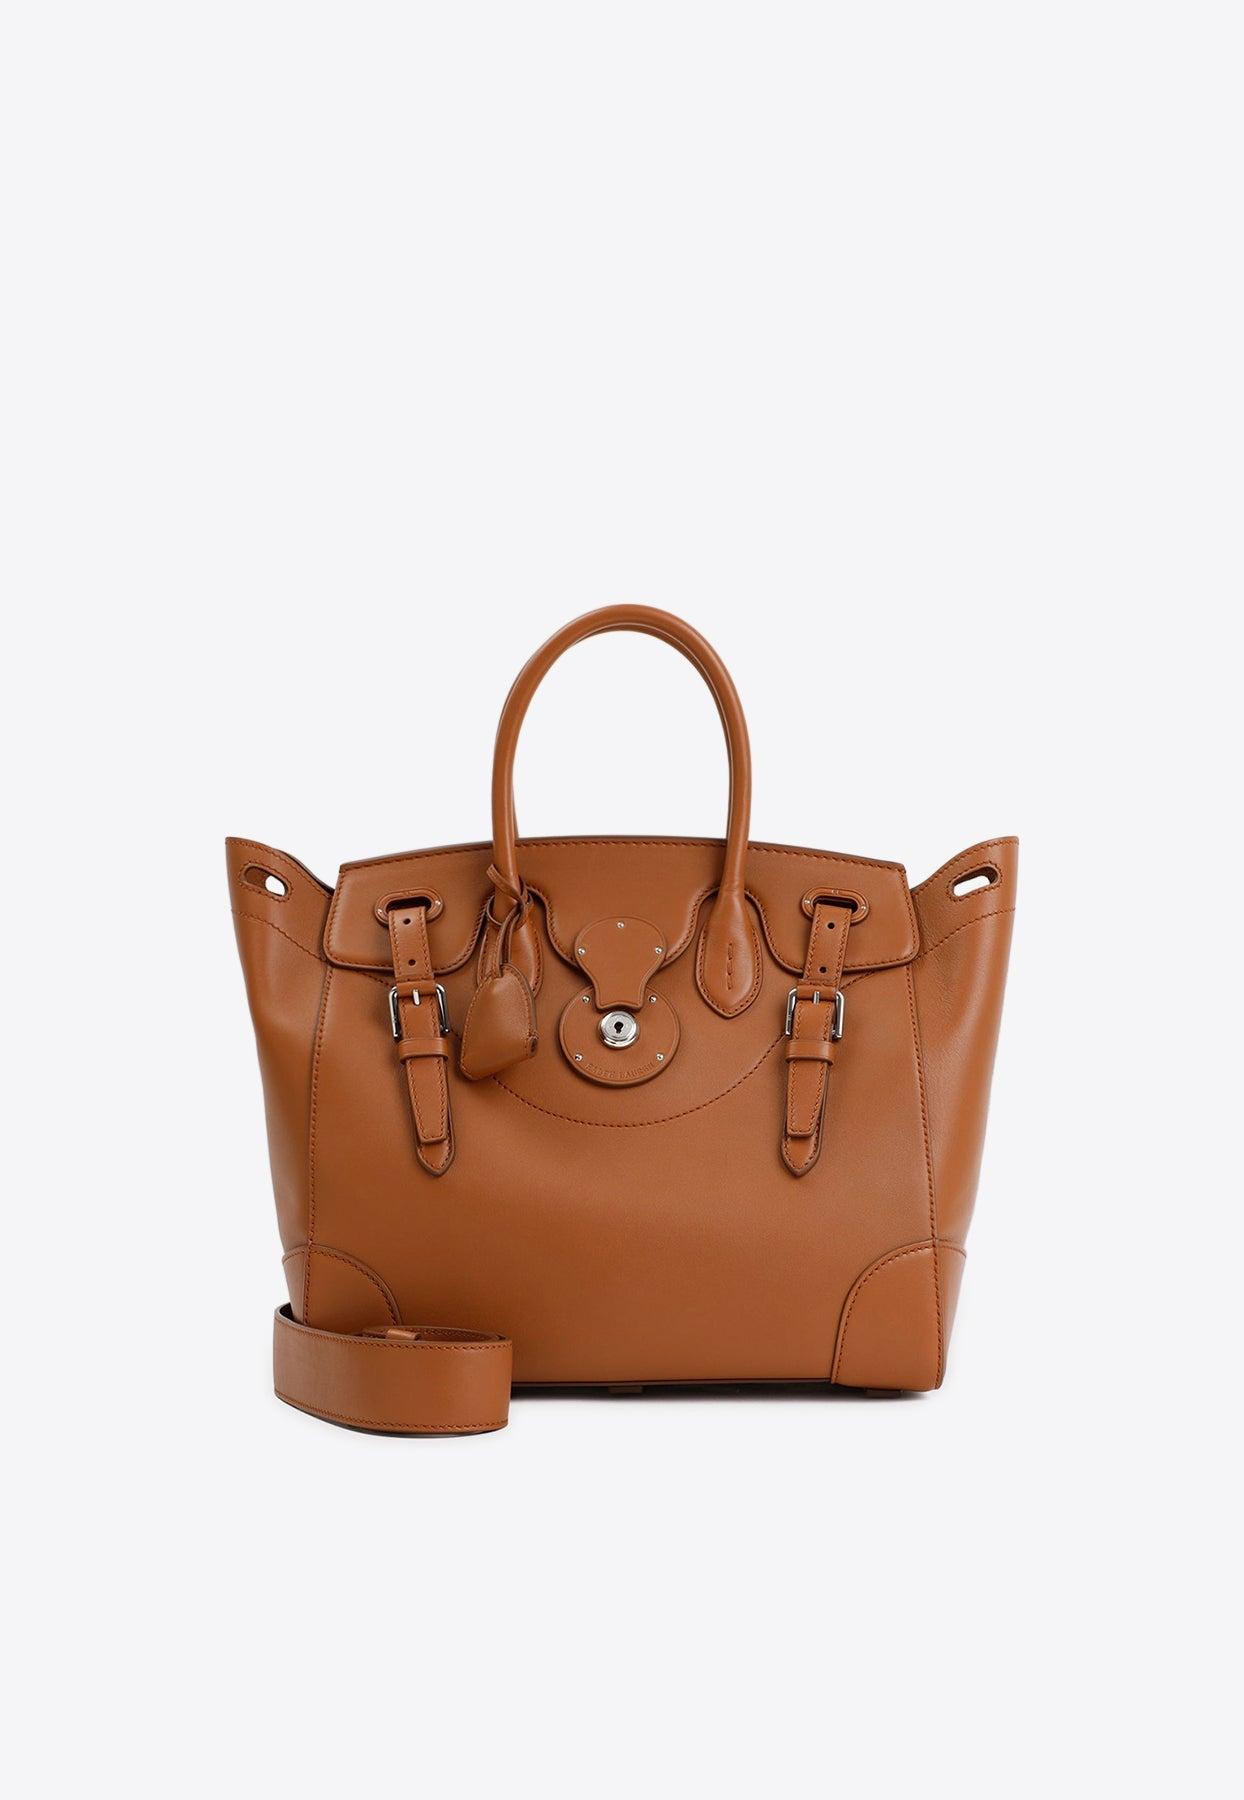 Ralph Lauren Ricky 33 Top Handle Bag in Brown | Lyst